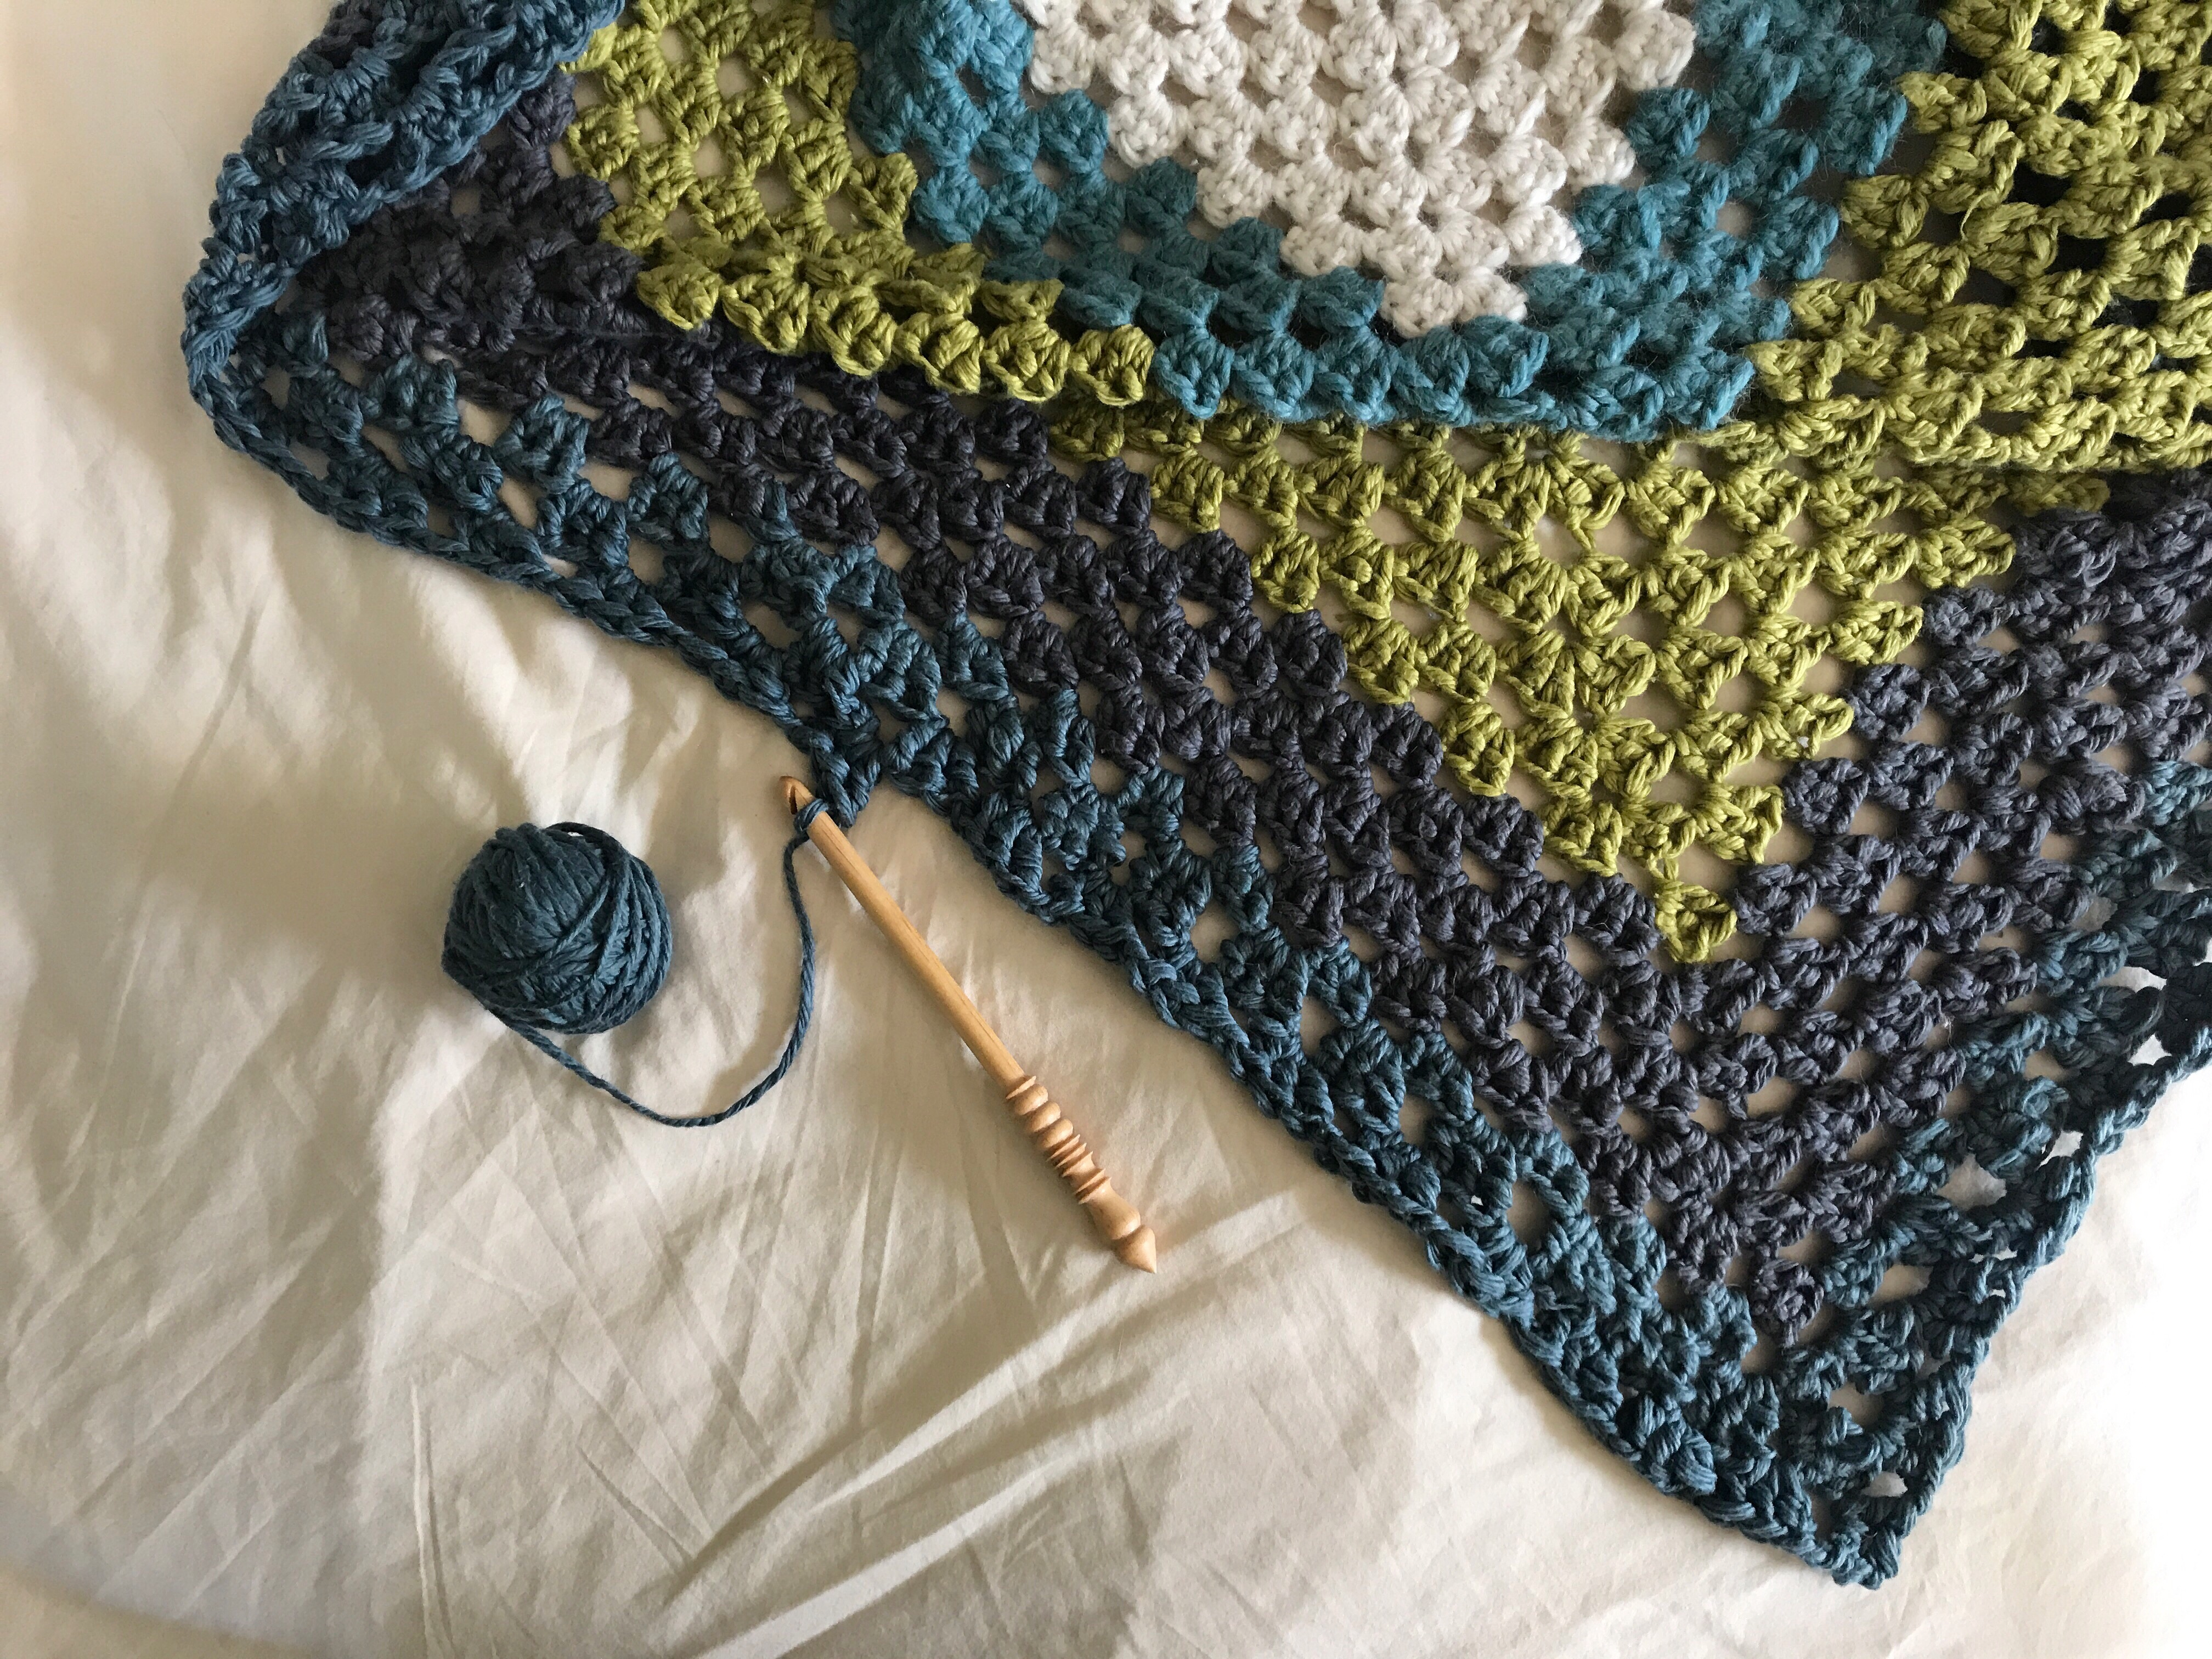 Crocheted blanket in progress